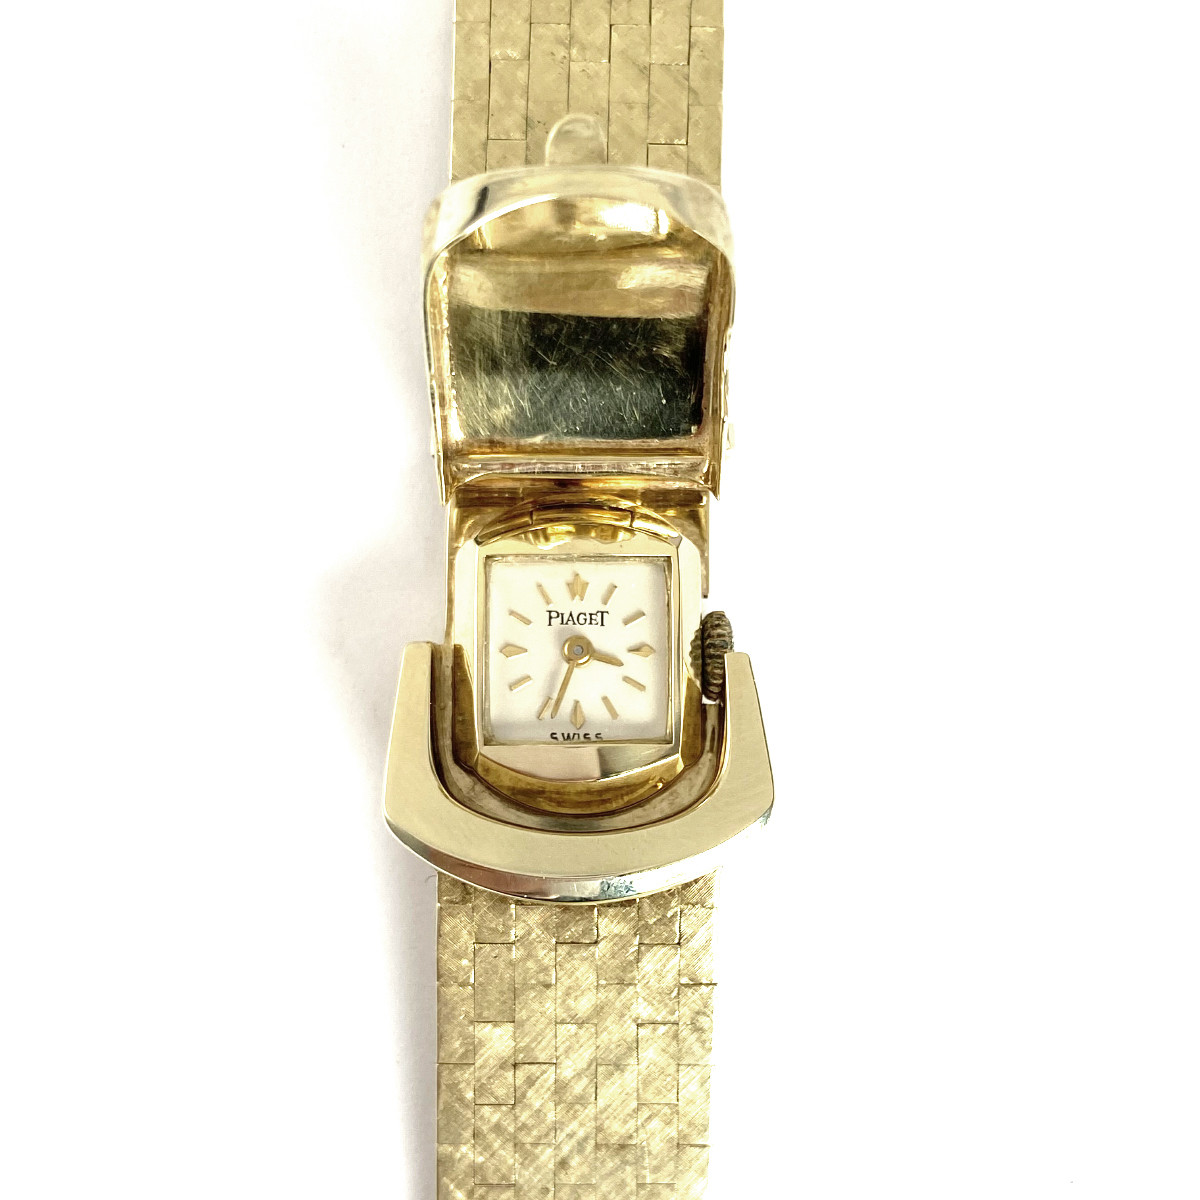 Montre d'occasion bracelet Piaget or 585 jaune 17 cm - vue 7